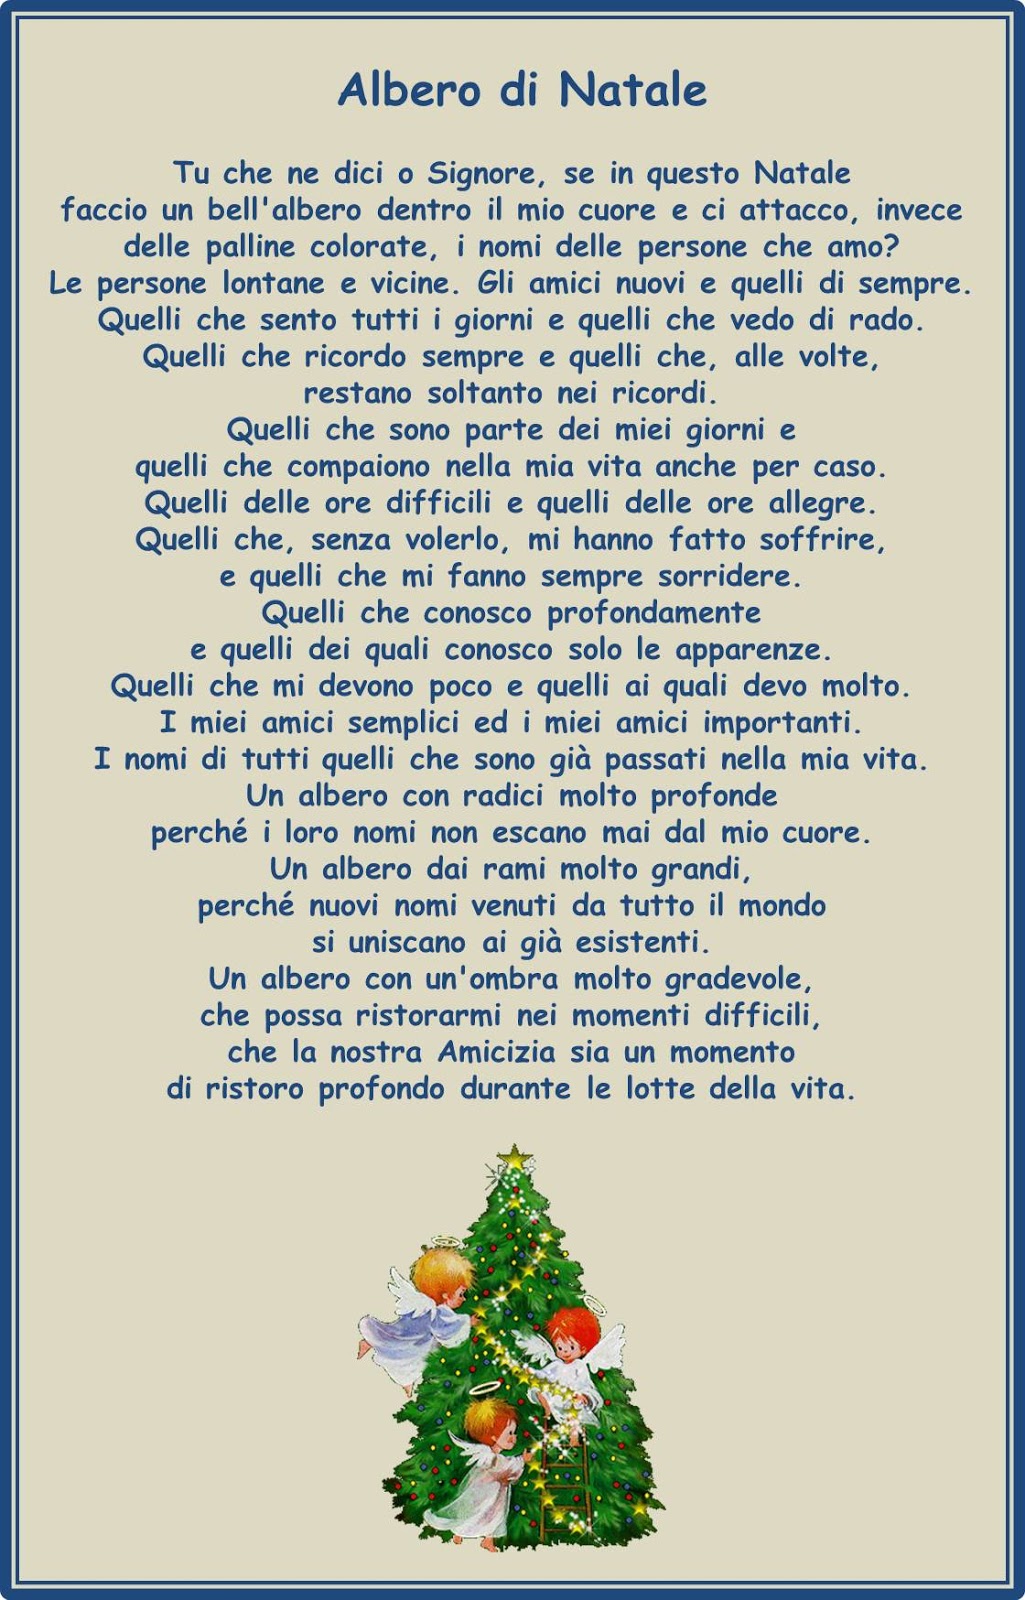 Poesie Sull Albero Di Natale.Francesca Ceccherini Testi E Immagini Di Psicologia Sociale Religione Poesia Narrativa Poesia Dell Albero Di Natale